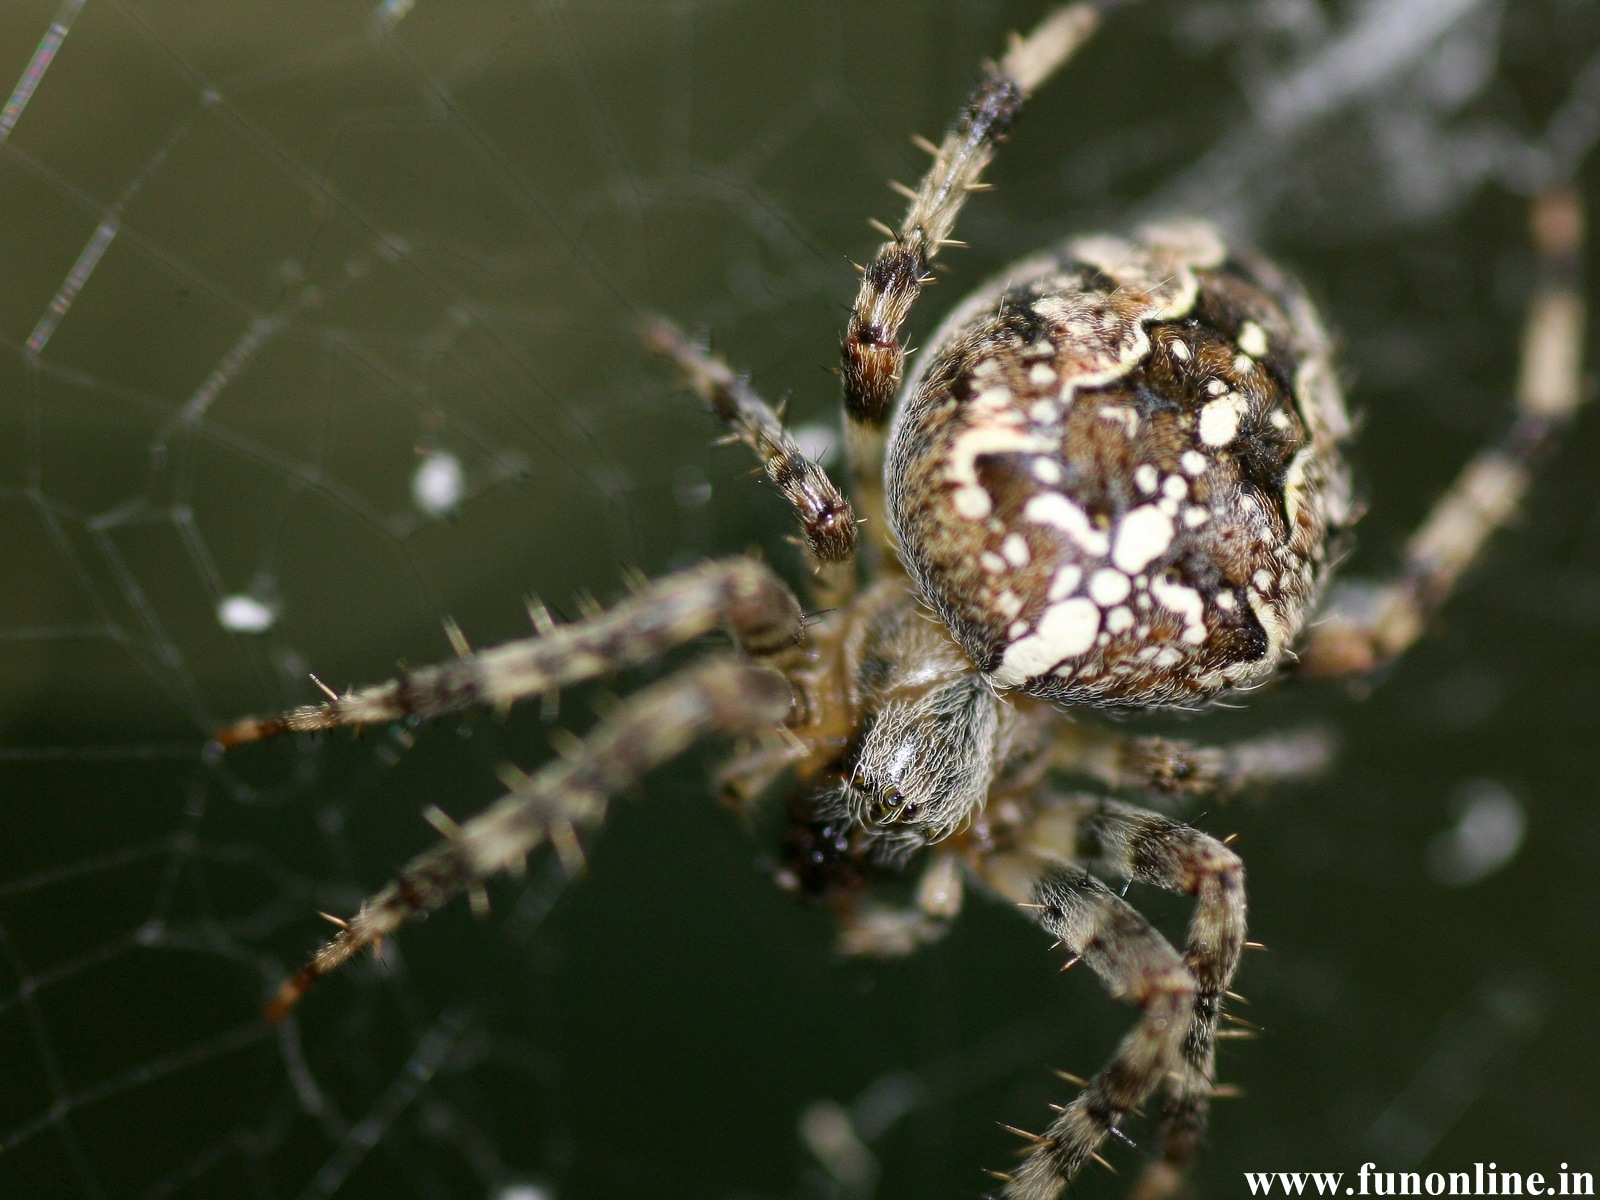 moving spider wallpaper,spider,araneus cavaticus,european garden spider,orb weaver spider,invertebrate